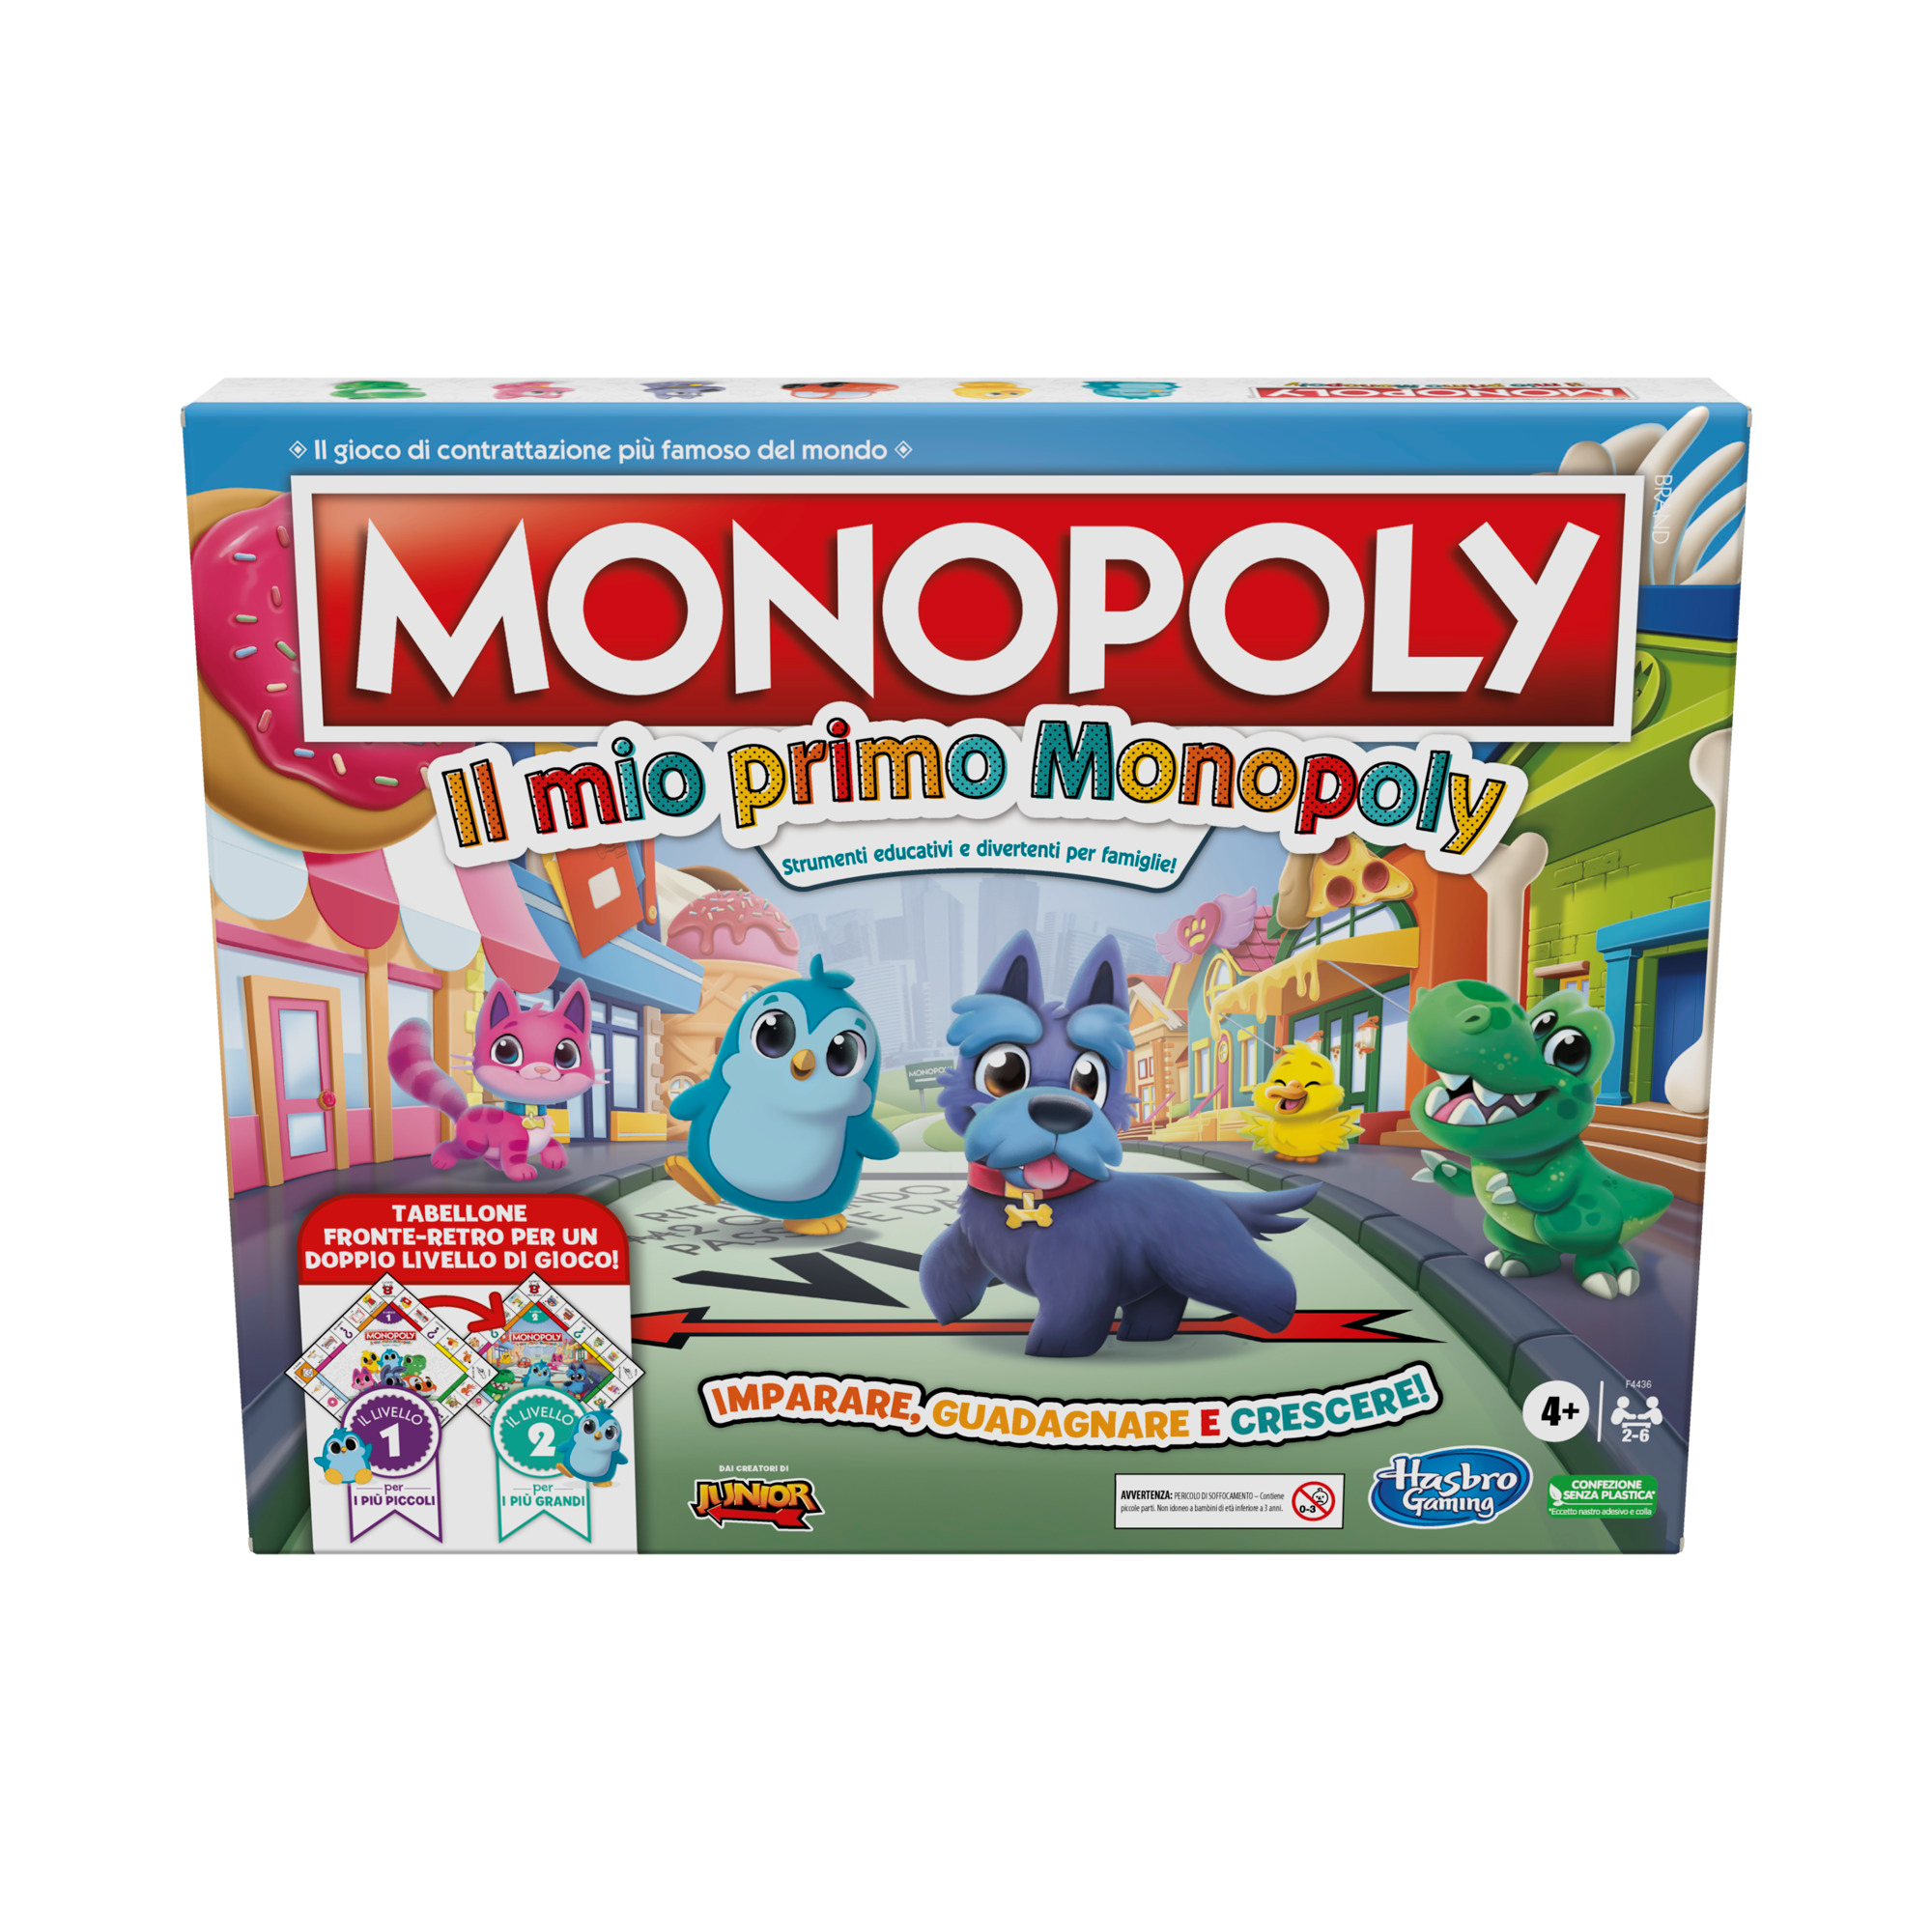 Monopoly: il mio primo monopoly, gioco da tavolo per famiglie, per bambini dai 4 anni in su - HASBRO GAMING, MONOPOLY